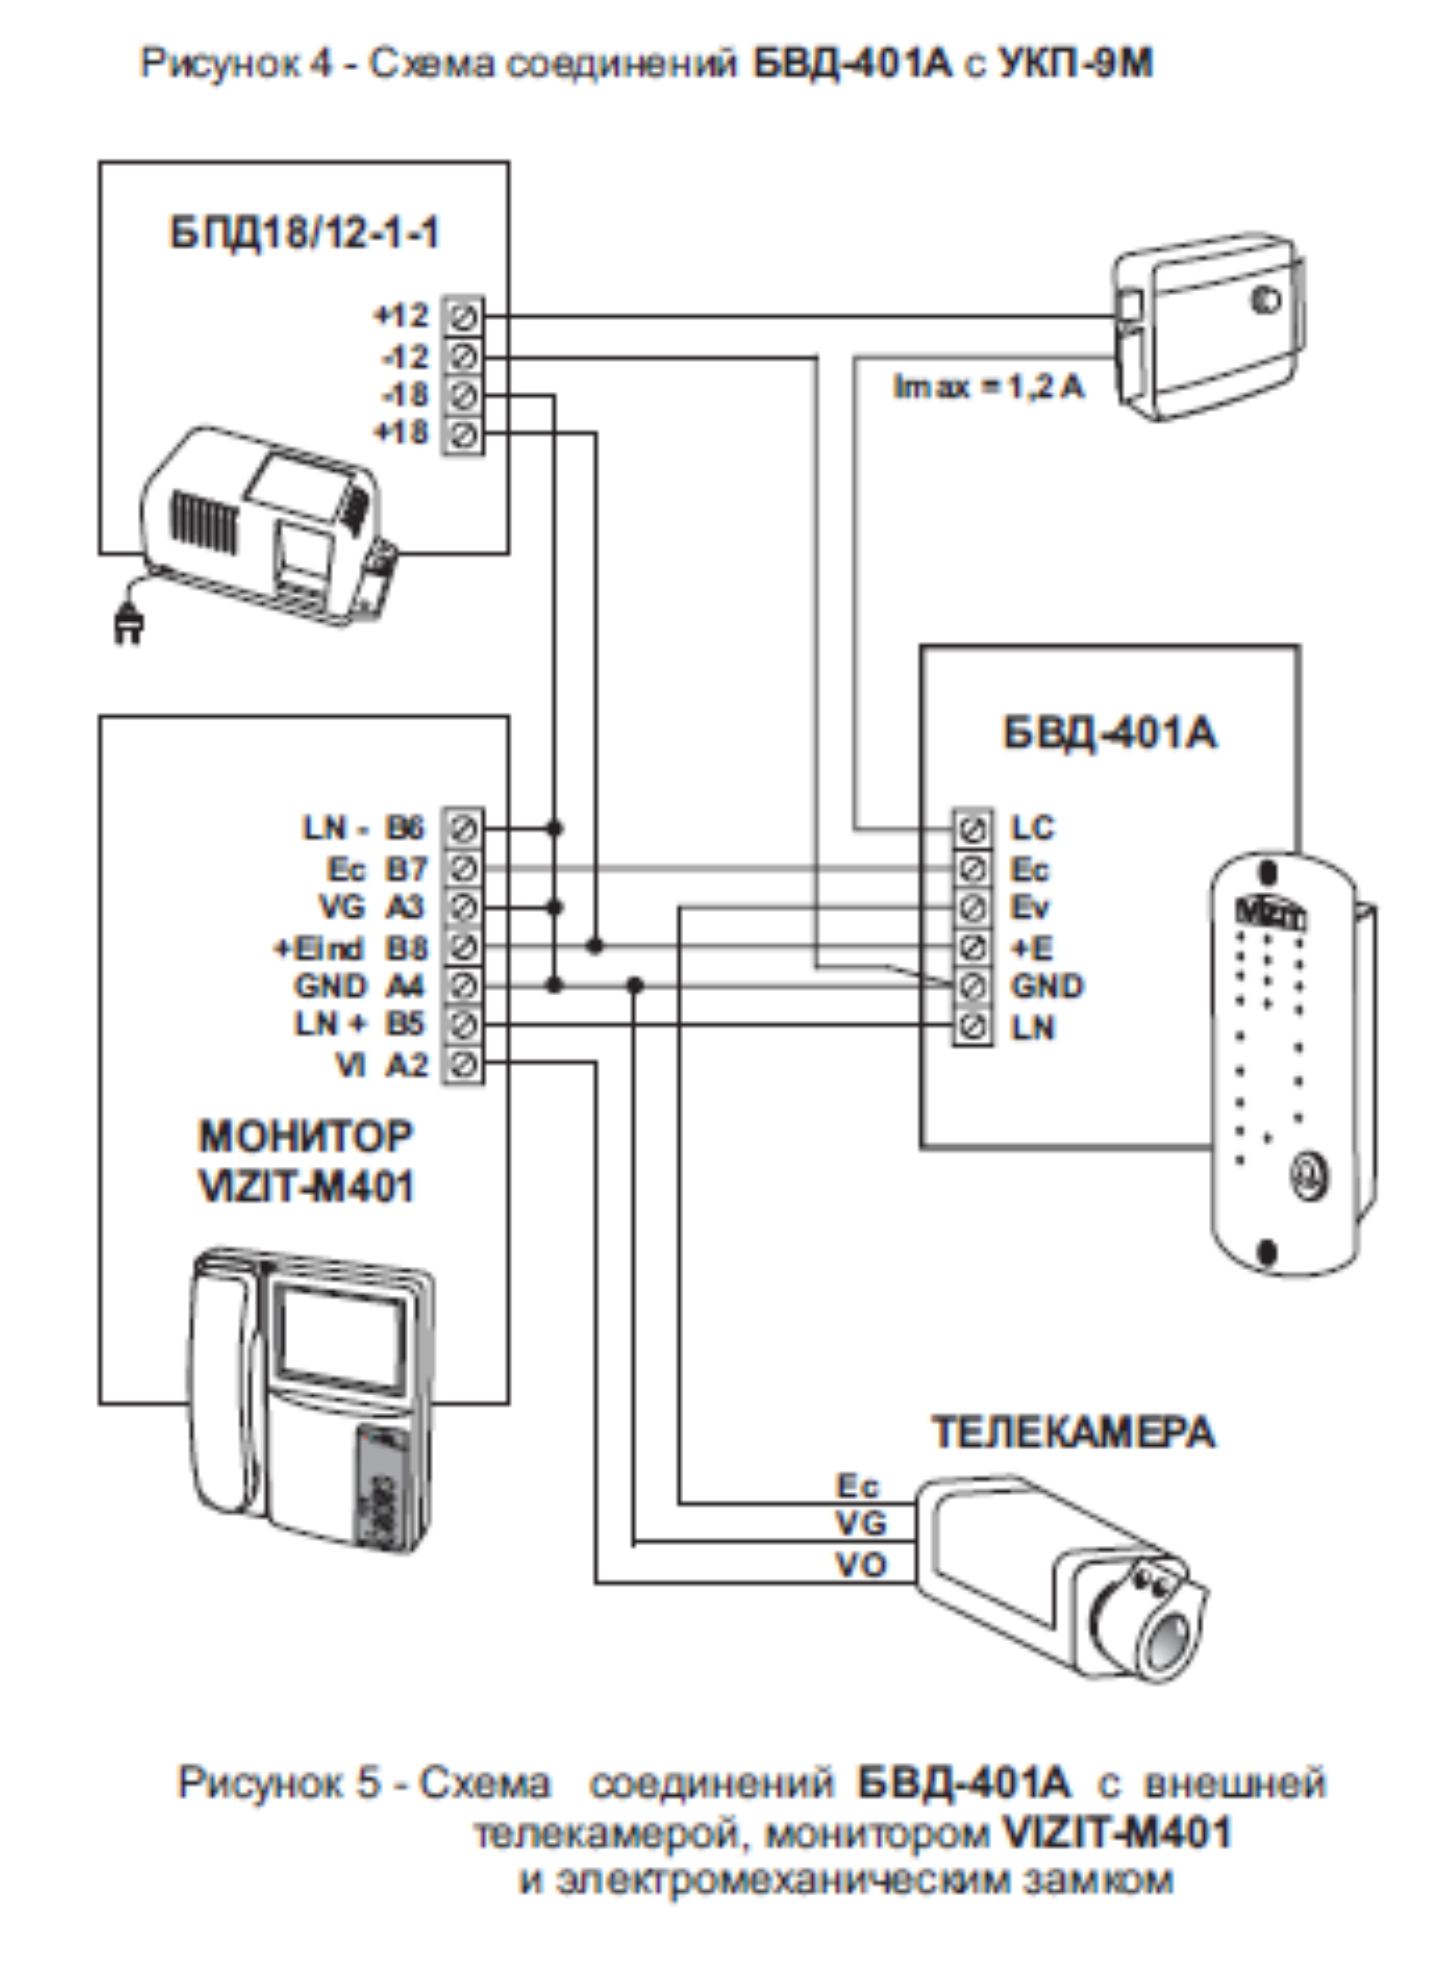 Схема соединений с внешней телекамерой, монитором и электромеханическим замком